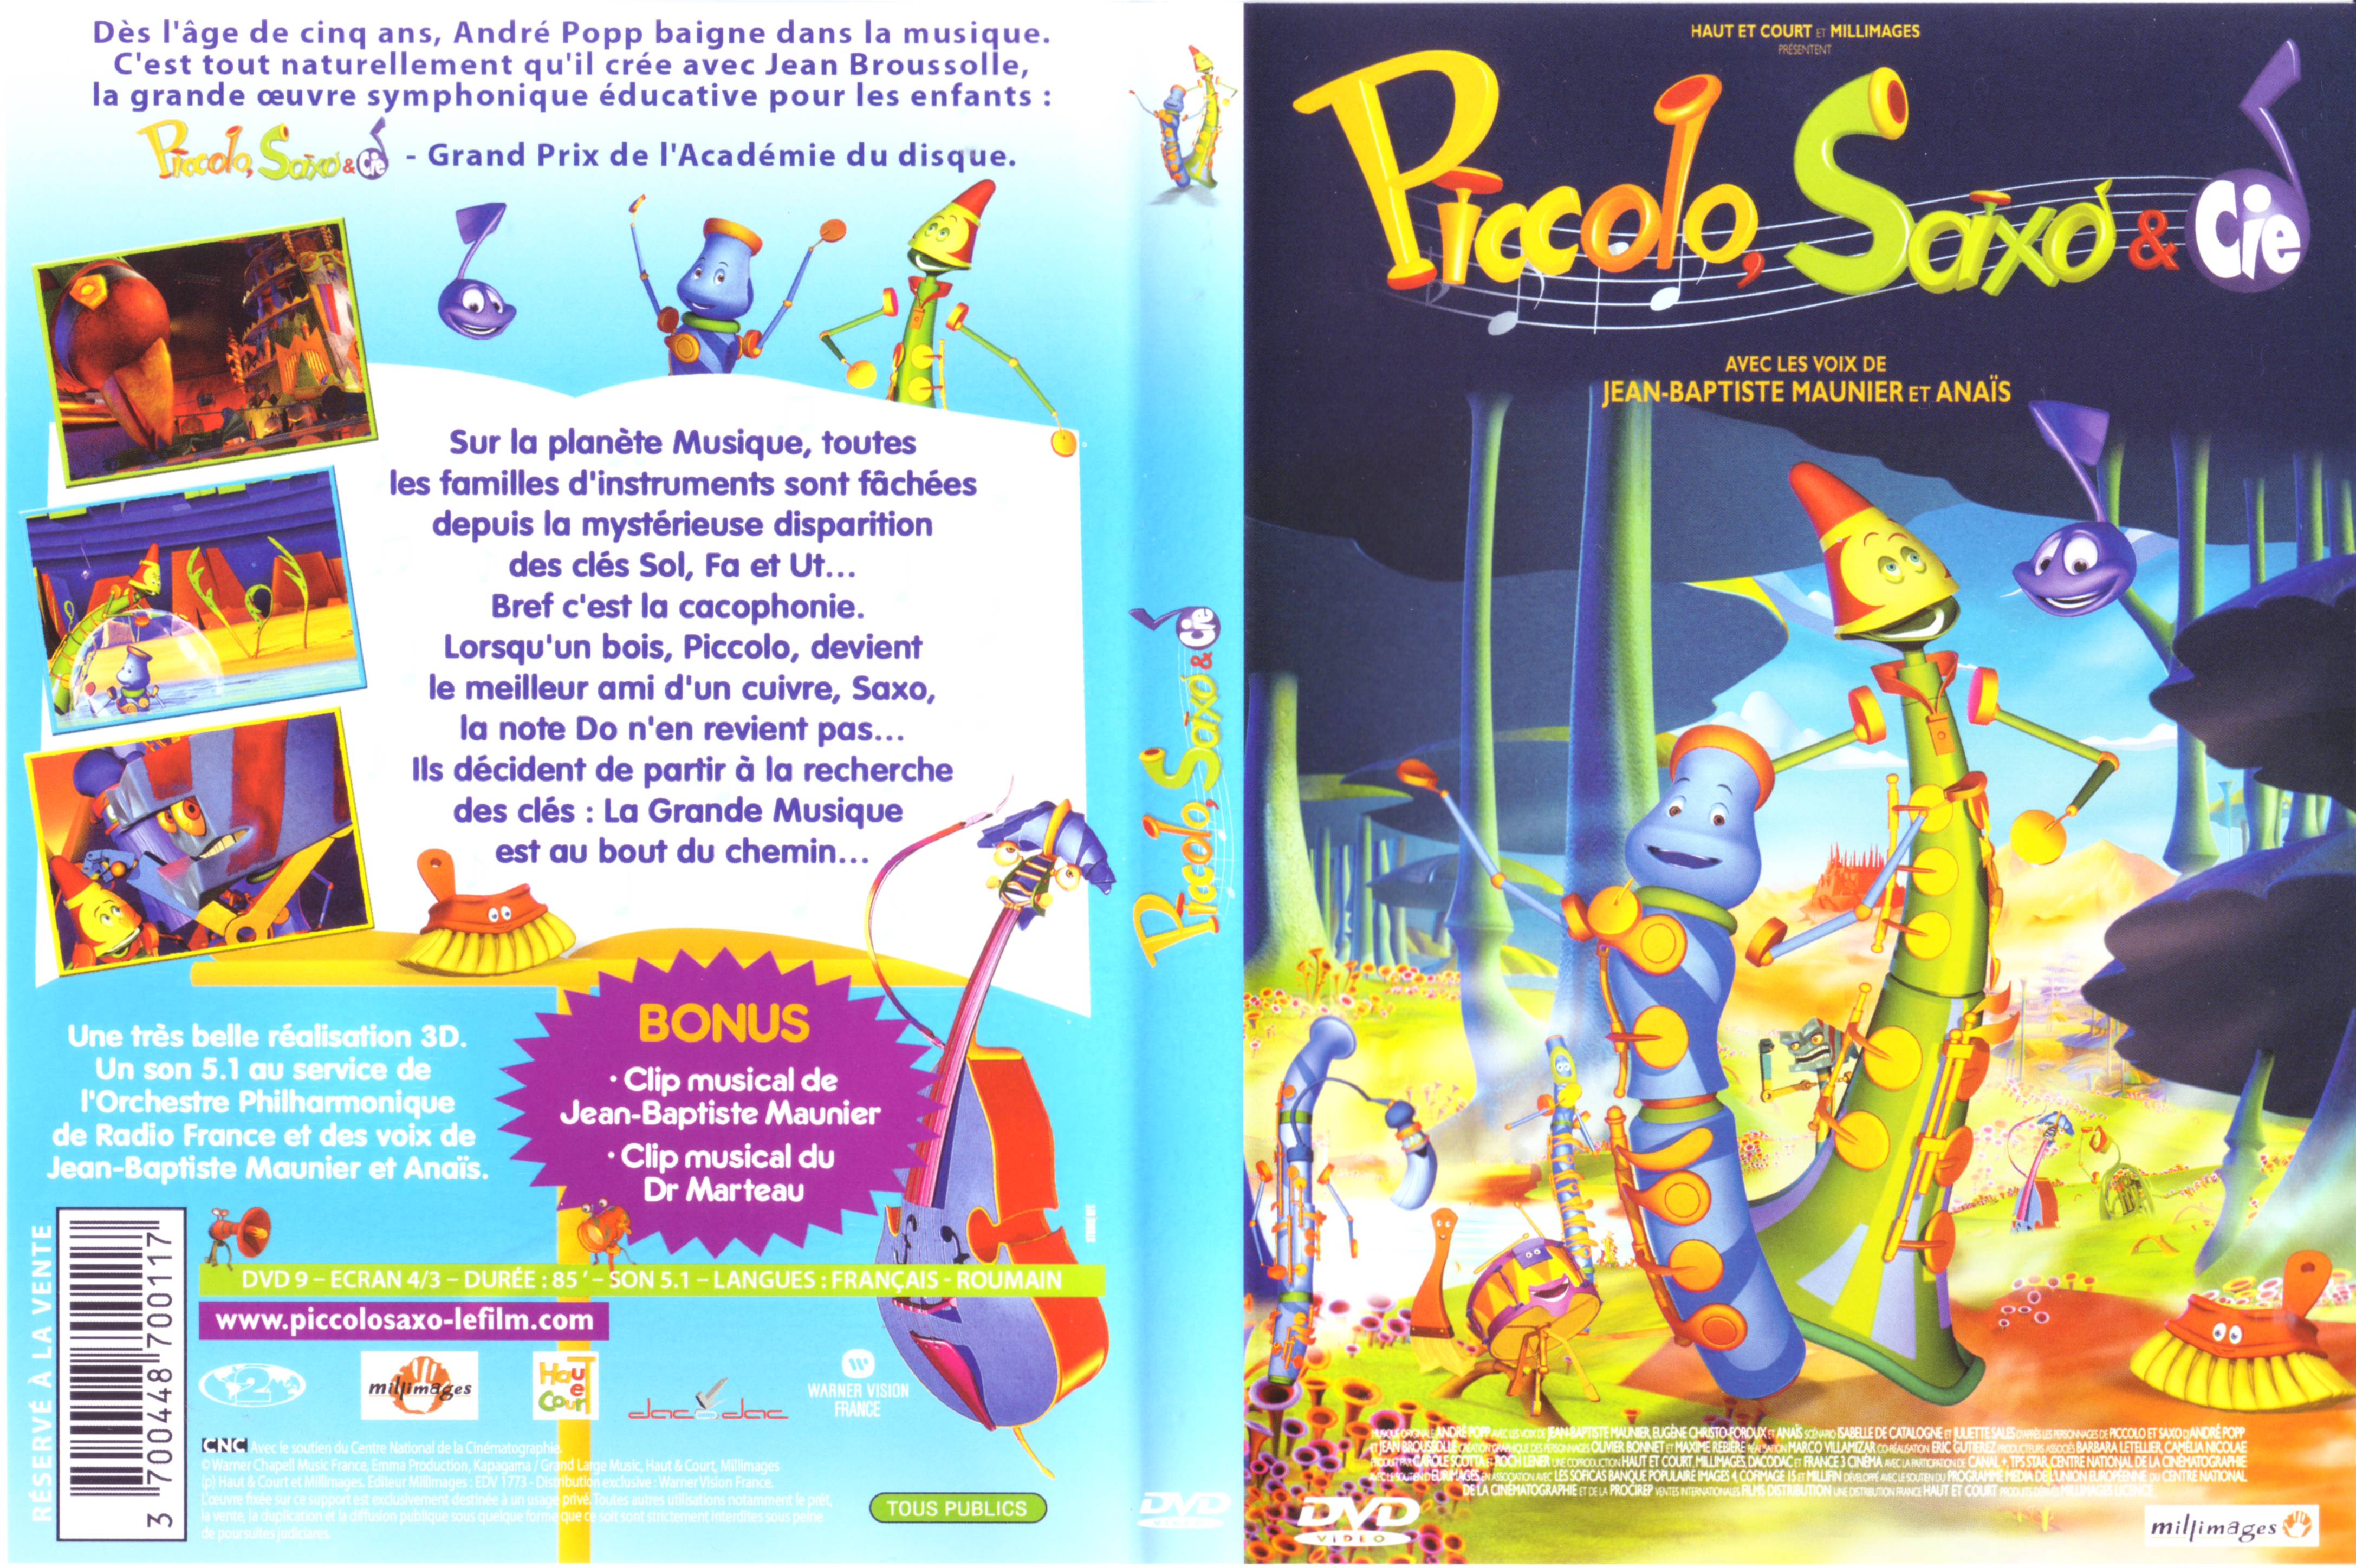 Jaquette DVD Piccolo Saxo et Cie